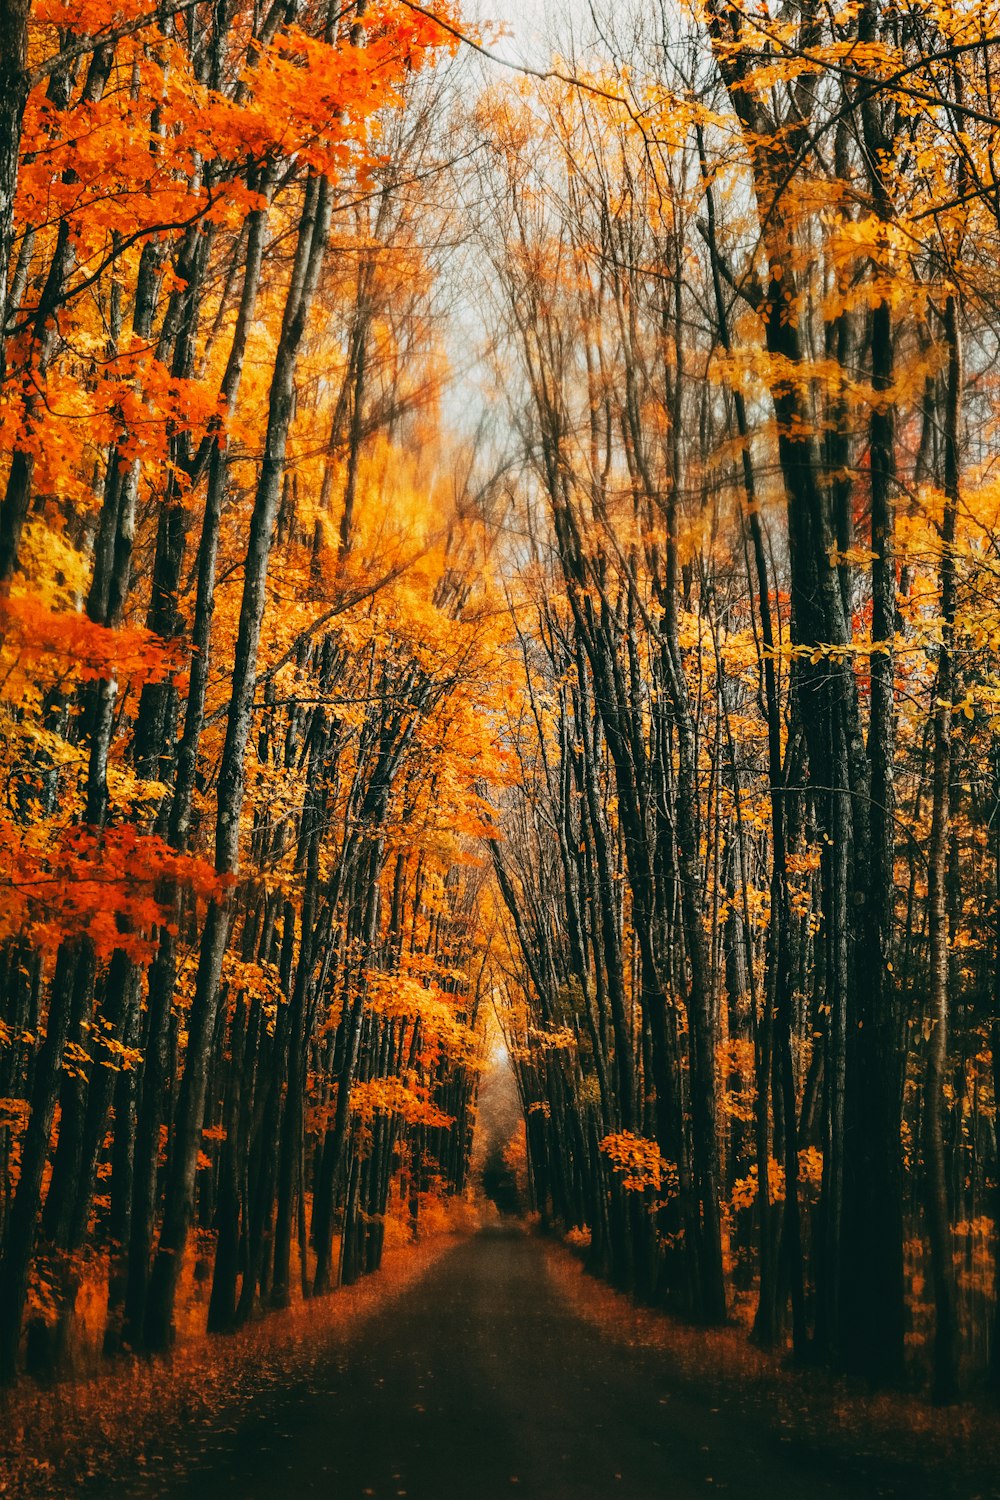 una strada circondata da alberi con foglie arancioni